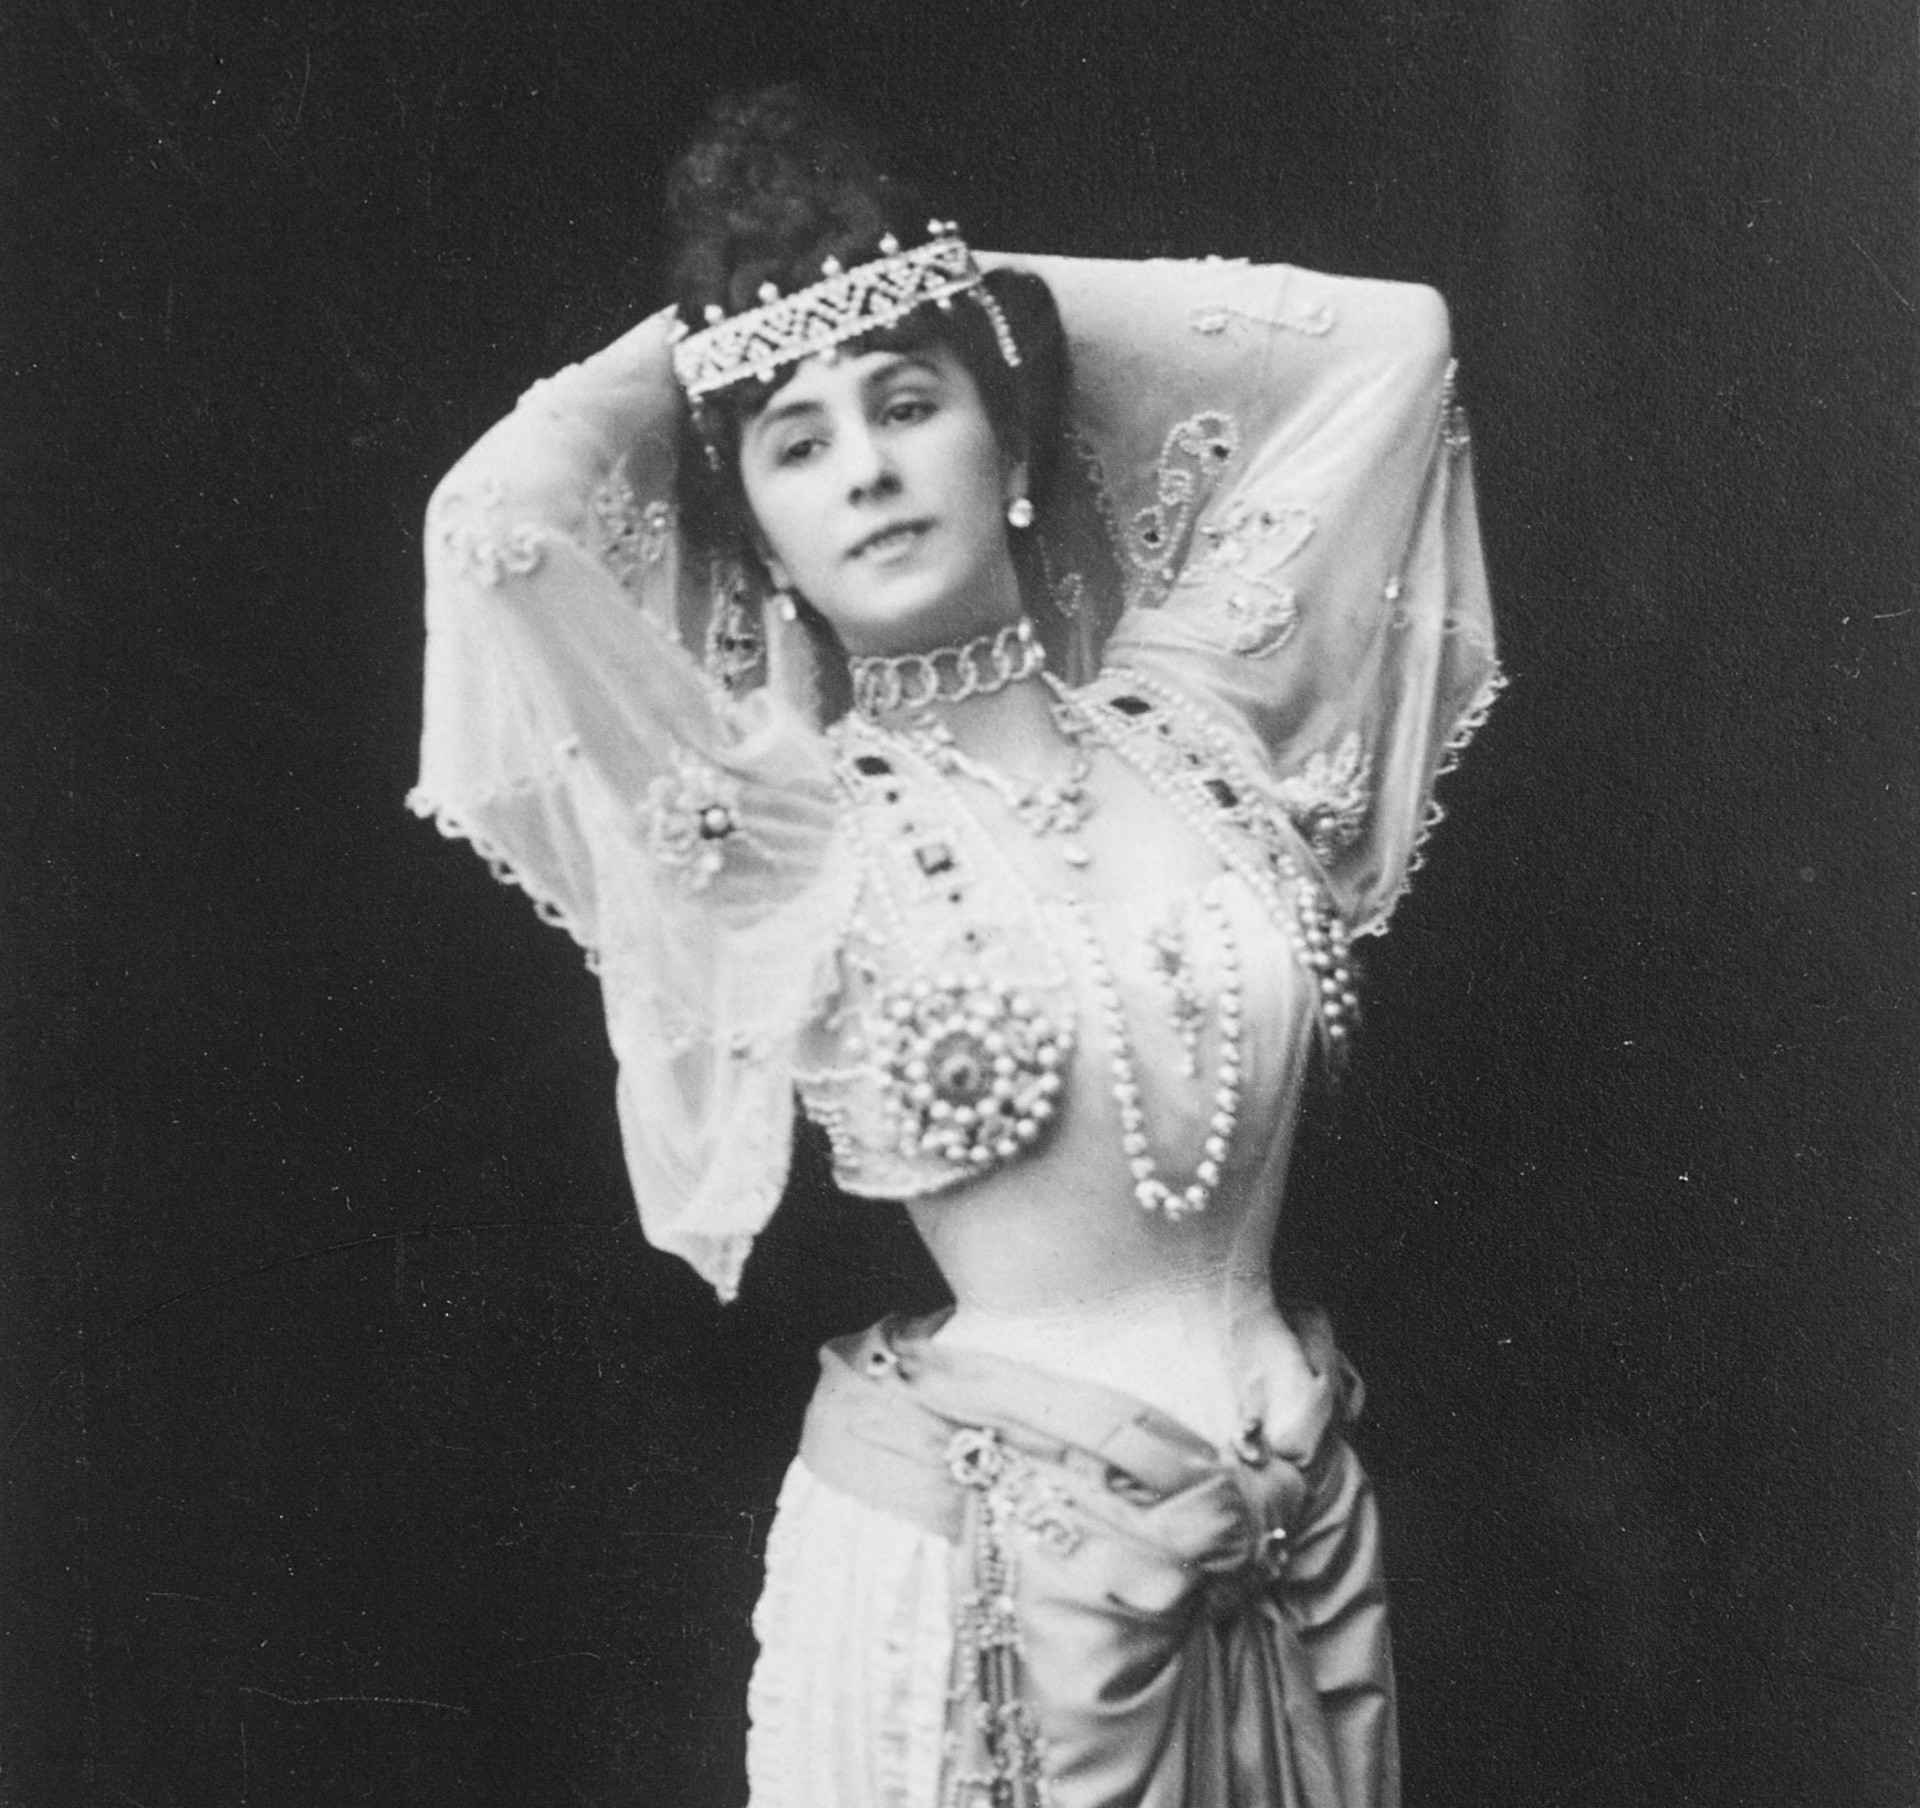 La ballerina Matilda Kshesinskaja 